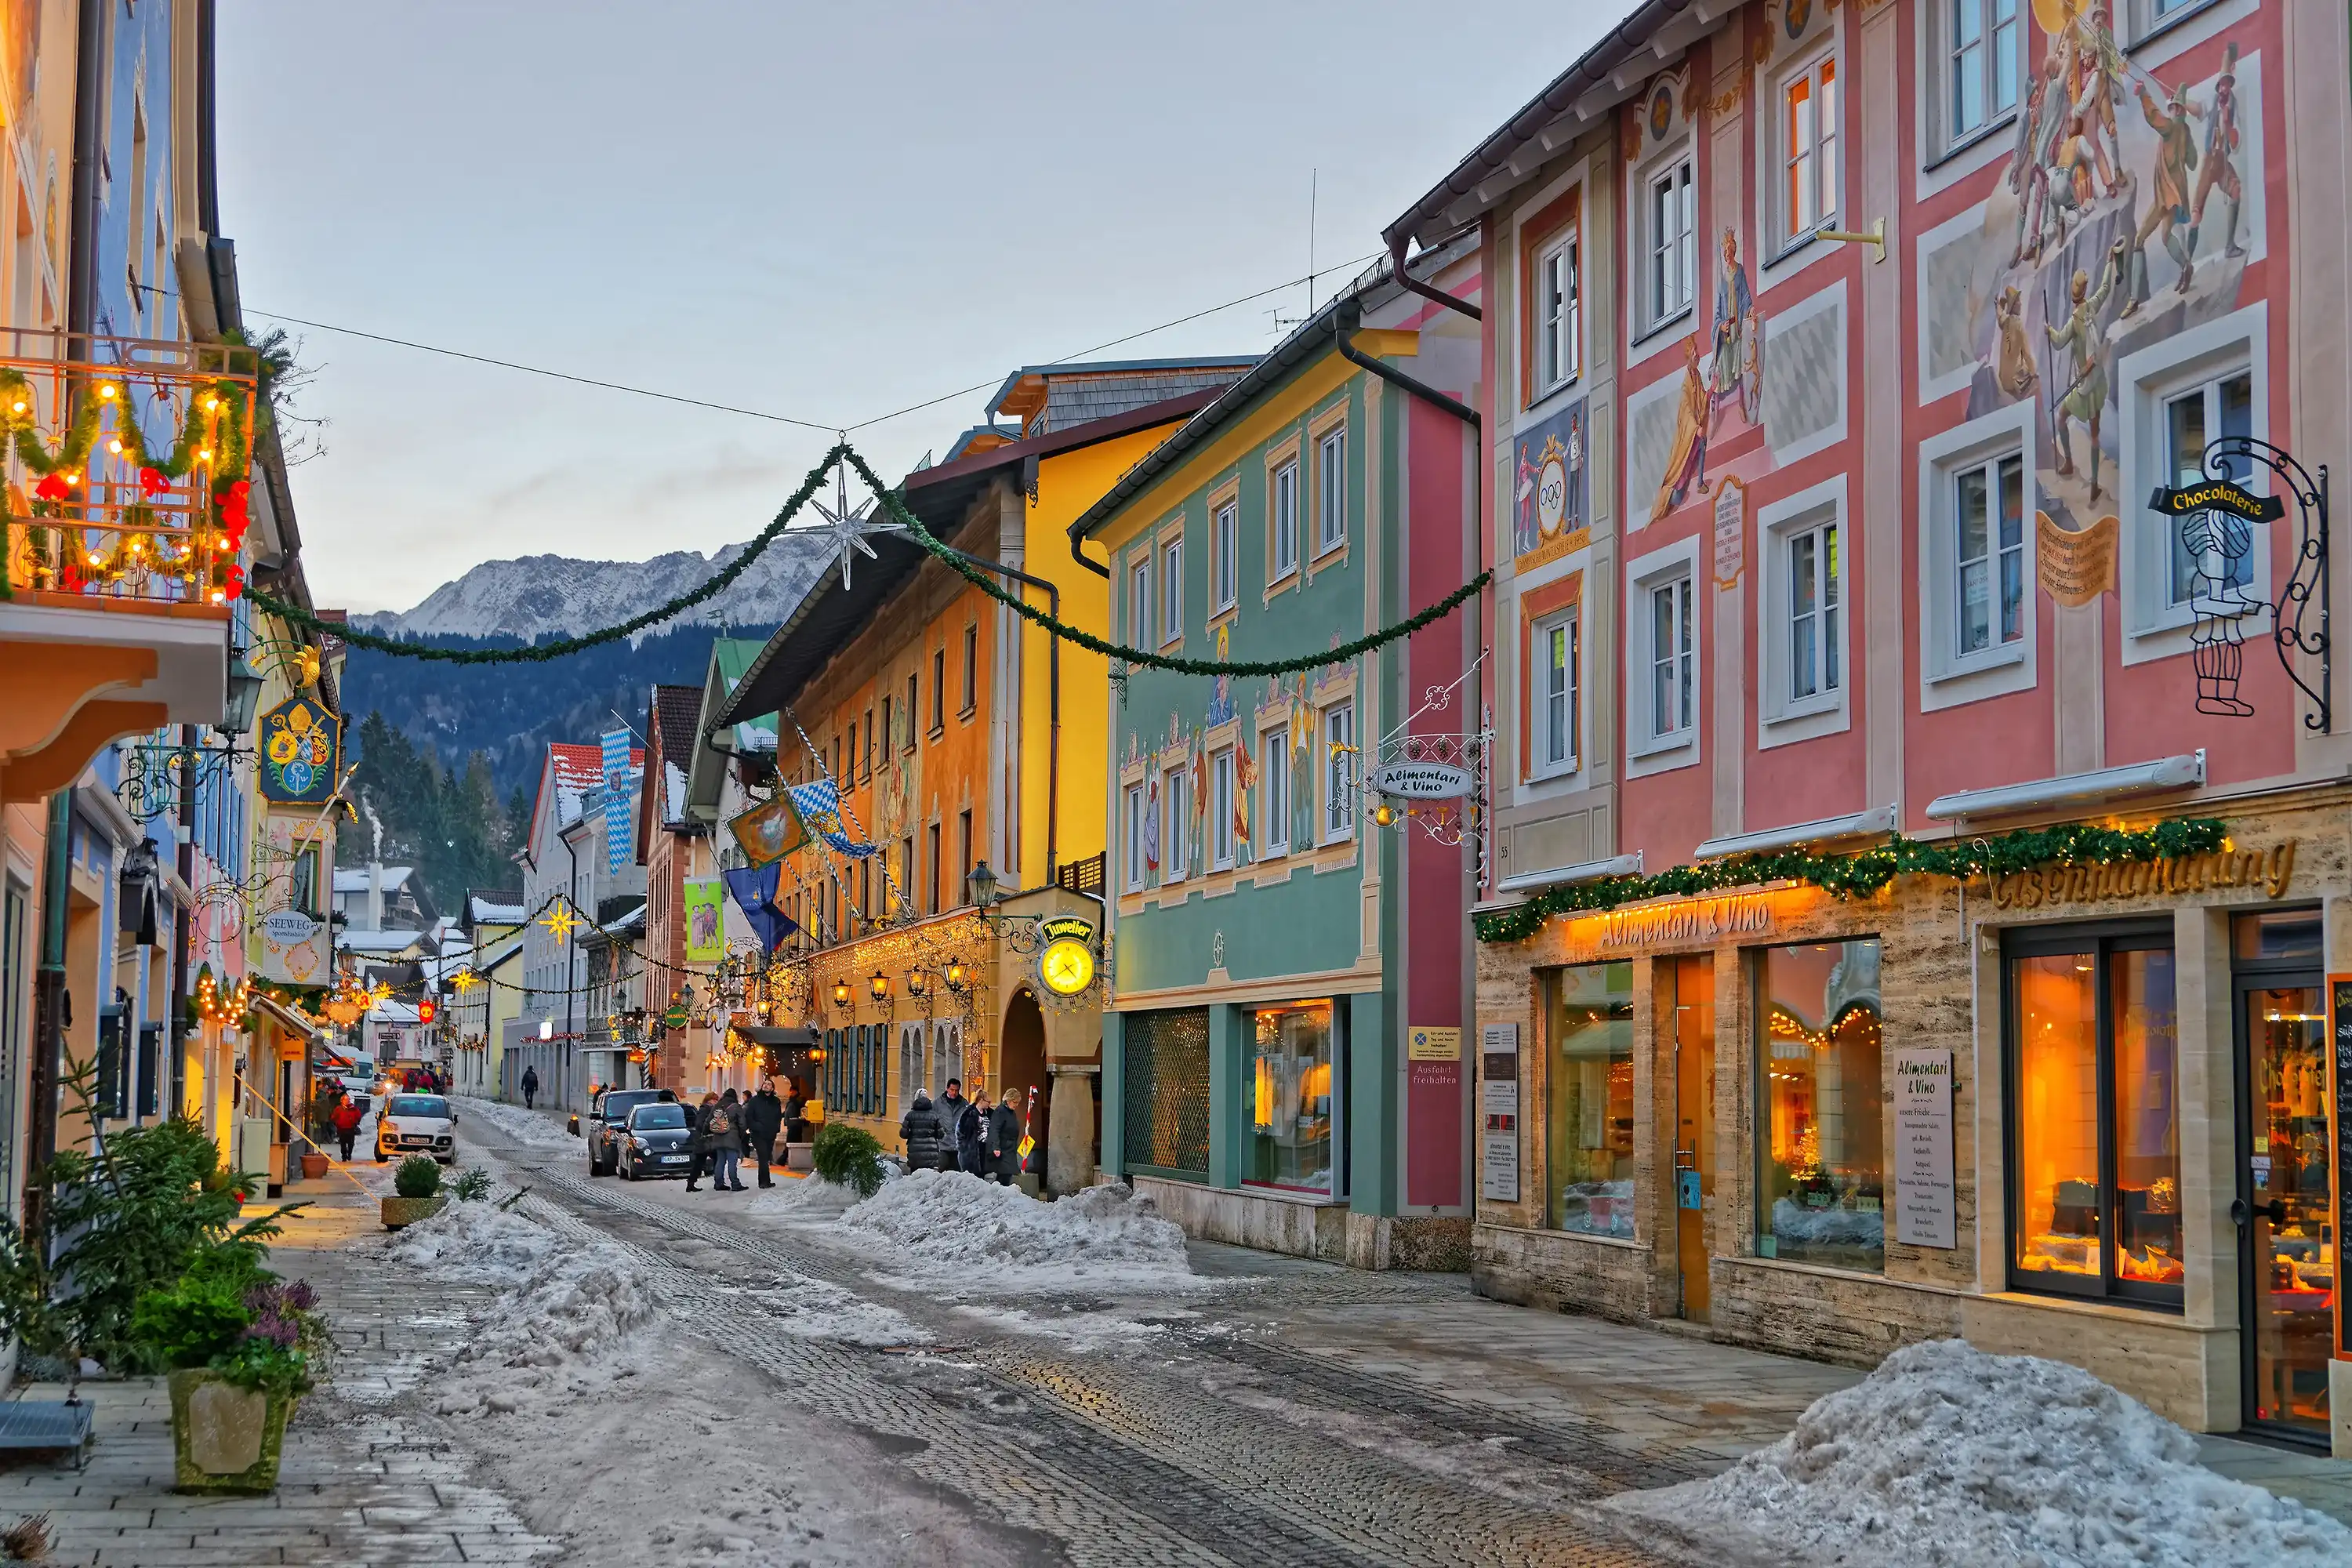 Best Garmisch-Partenkirchen hotels. Cheap hotels in Garmisch-Partenkirchen, Germany